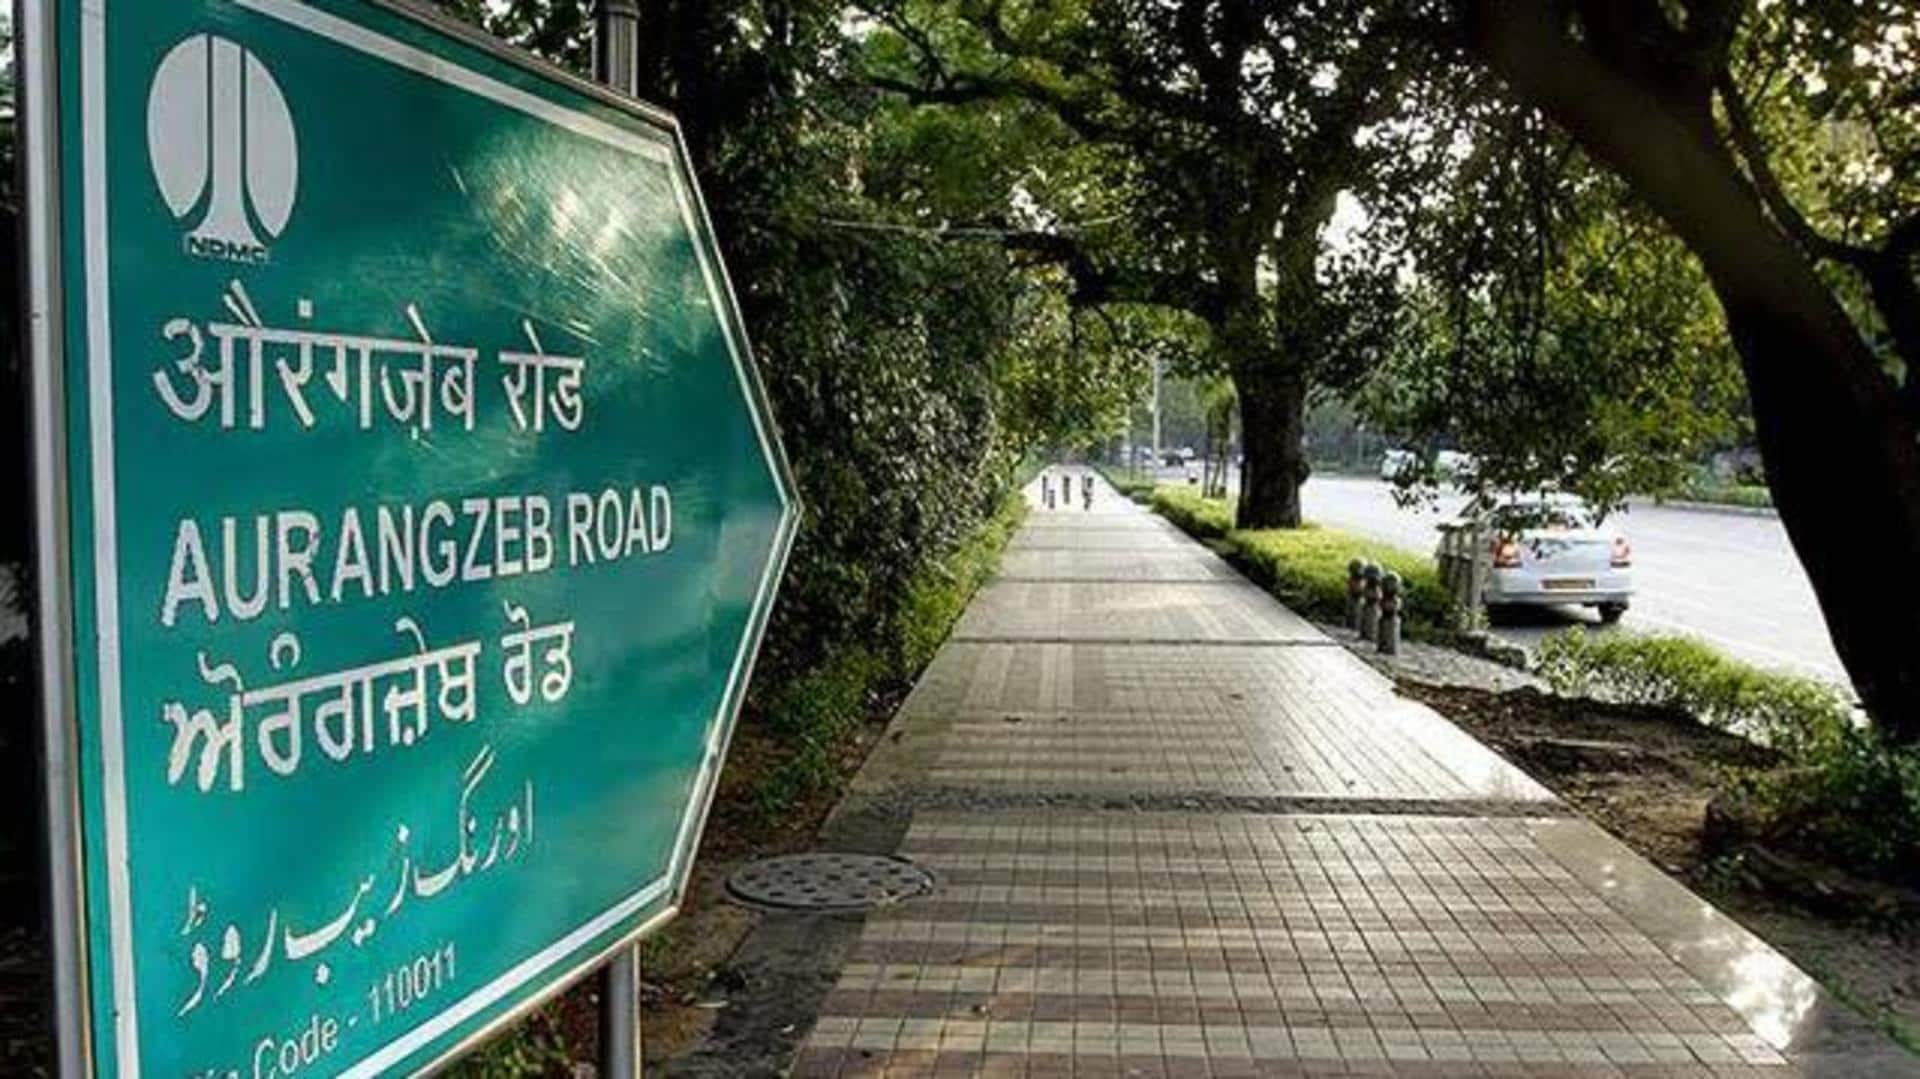 Delhi: Aurangzeb Lane renamed after APJ Abdul Kalam